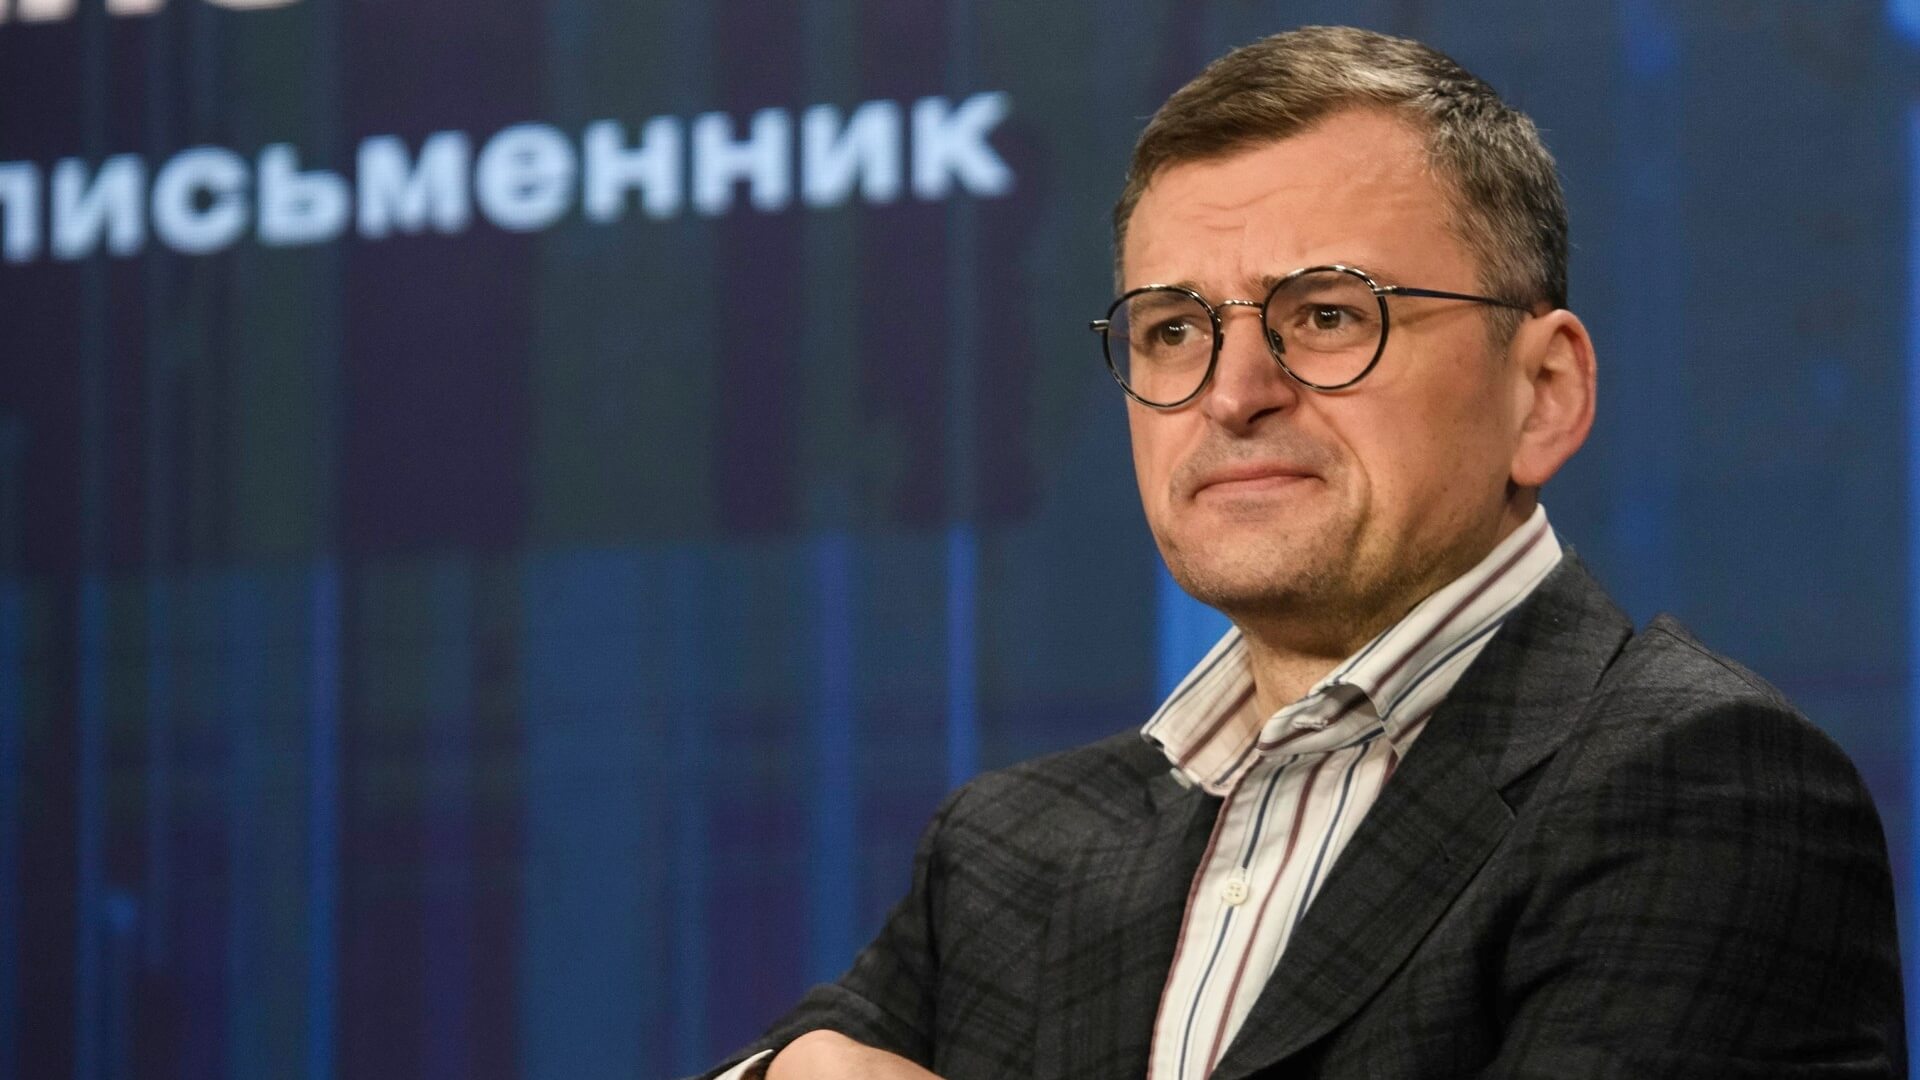 Український міністр закордонних справ Дмитро Кулеба попереджає країни Балтії про можливу російську агресію